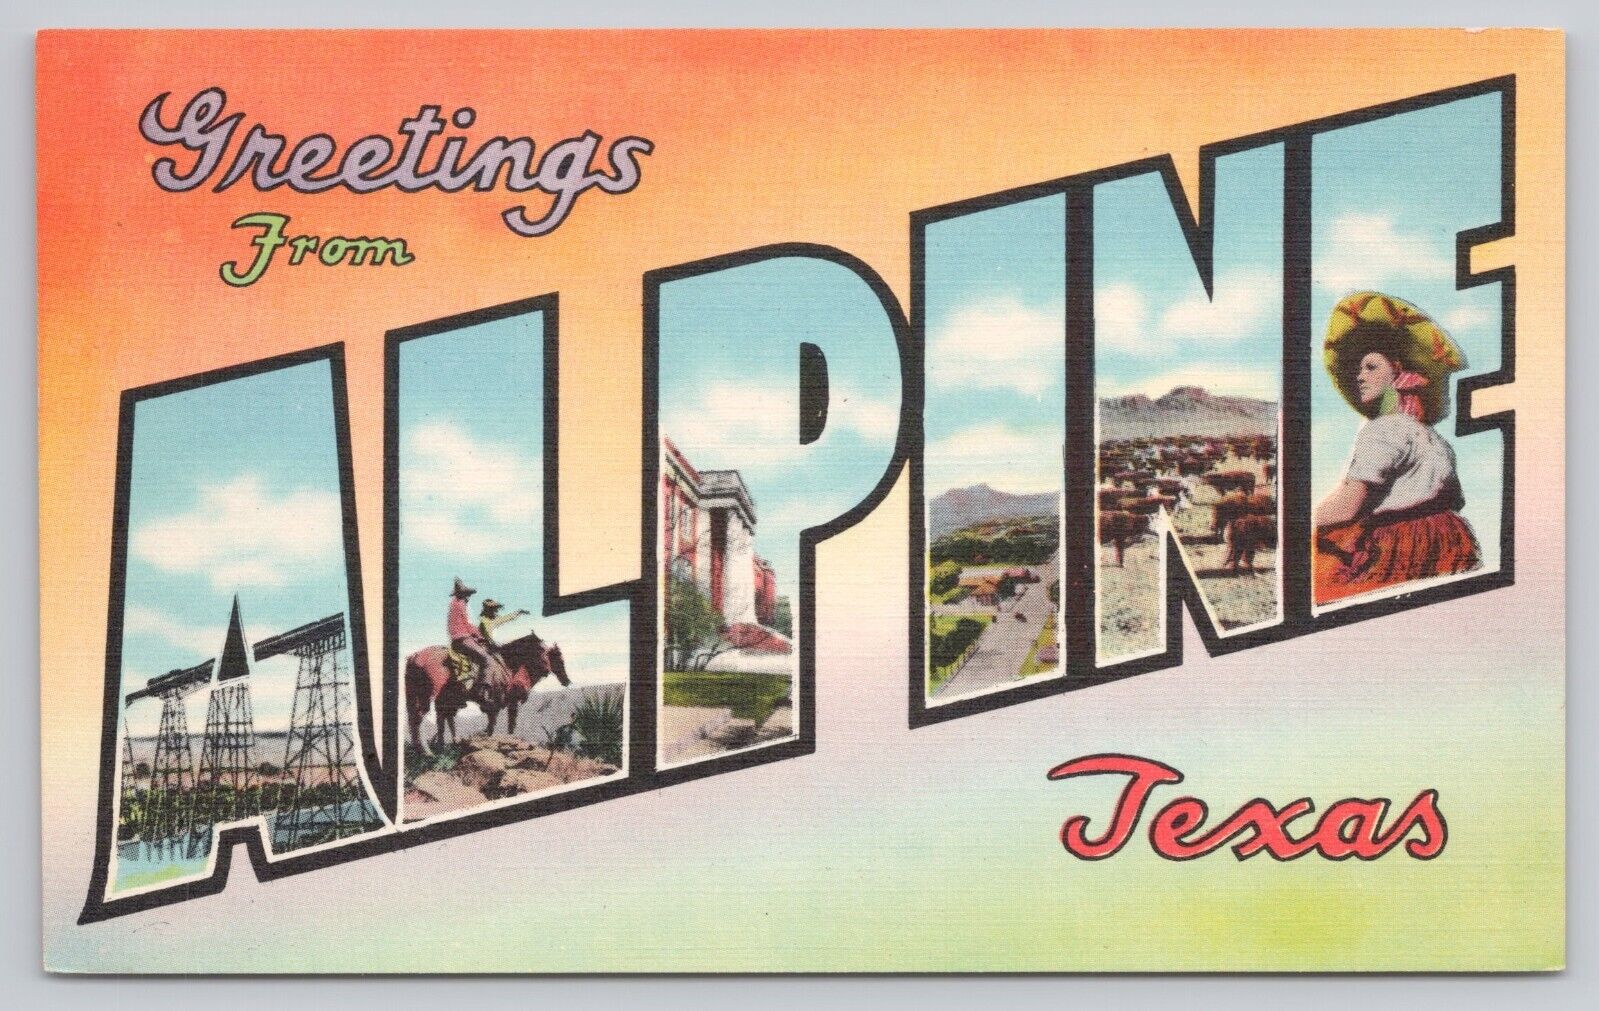 Alpine Texas, Large Letter Greetings, Vintage Postcard